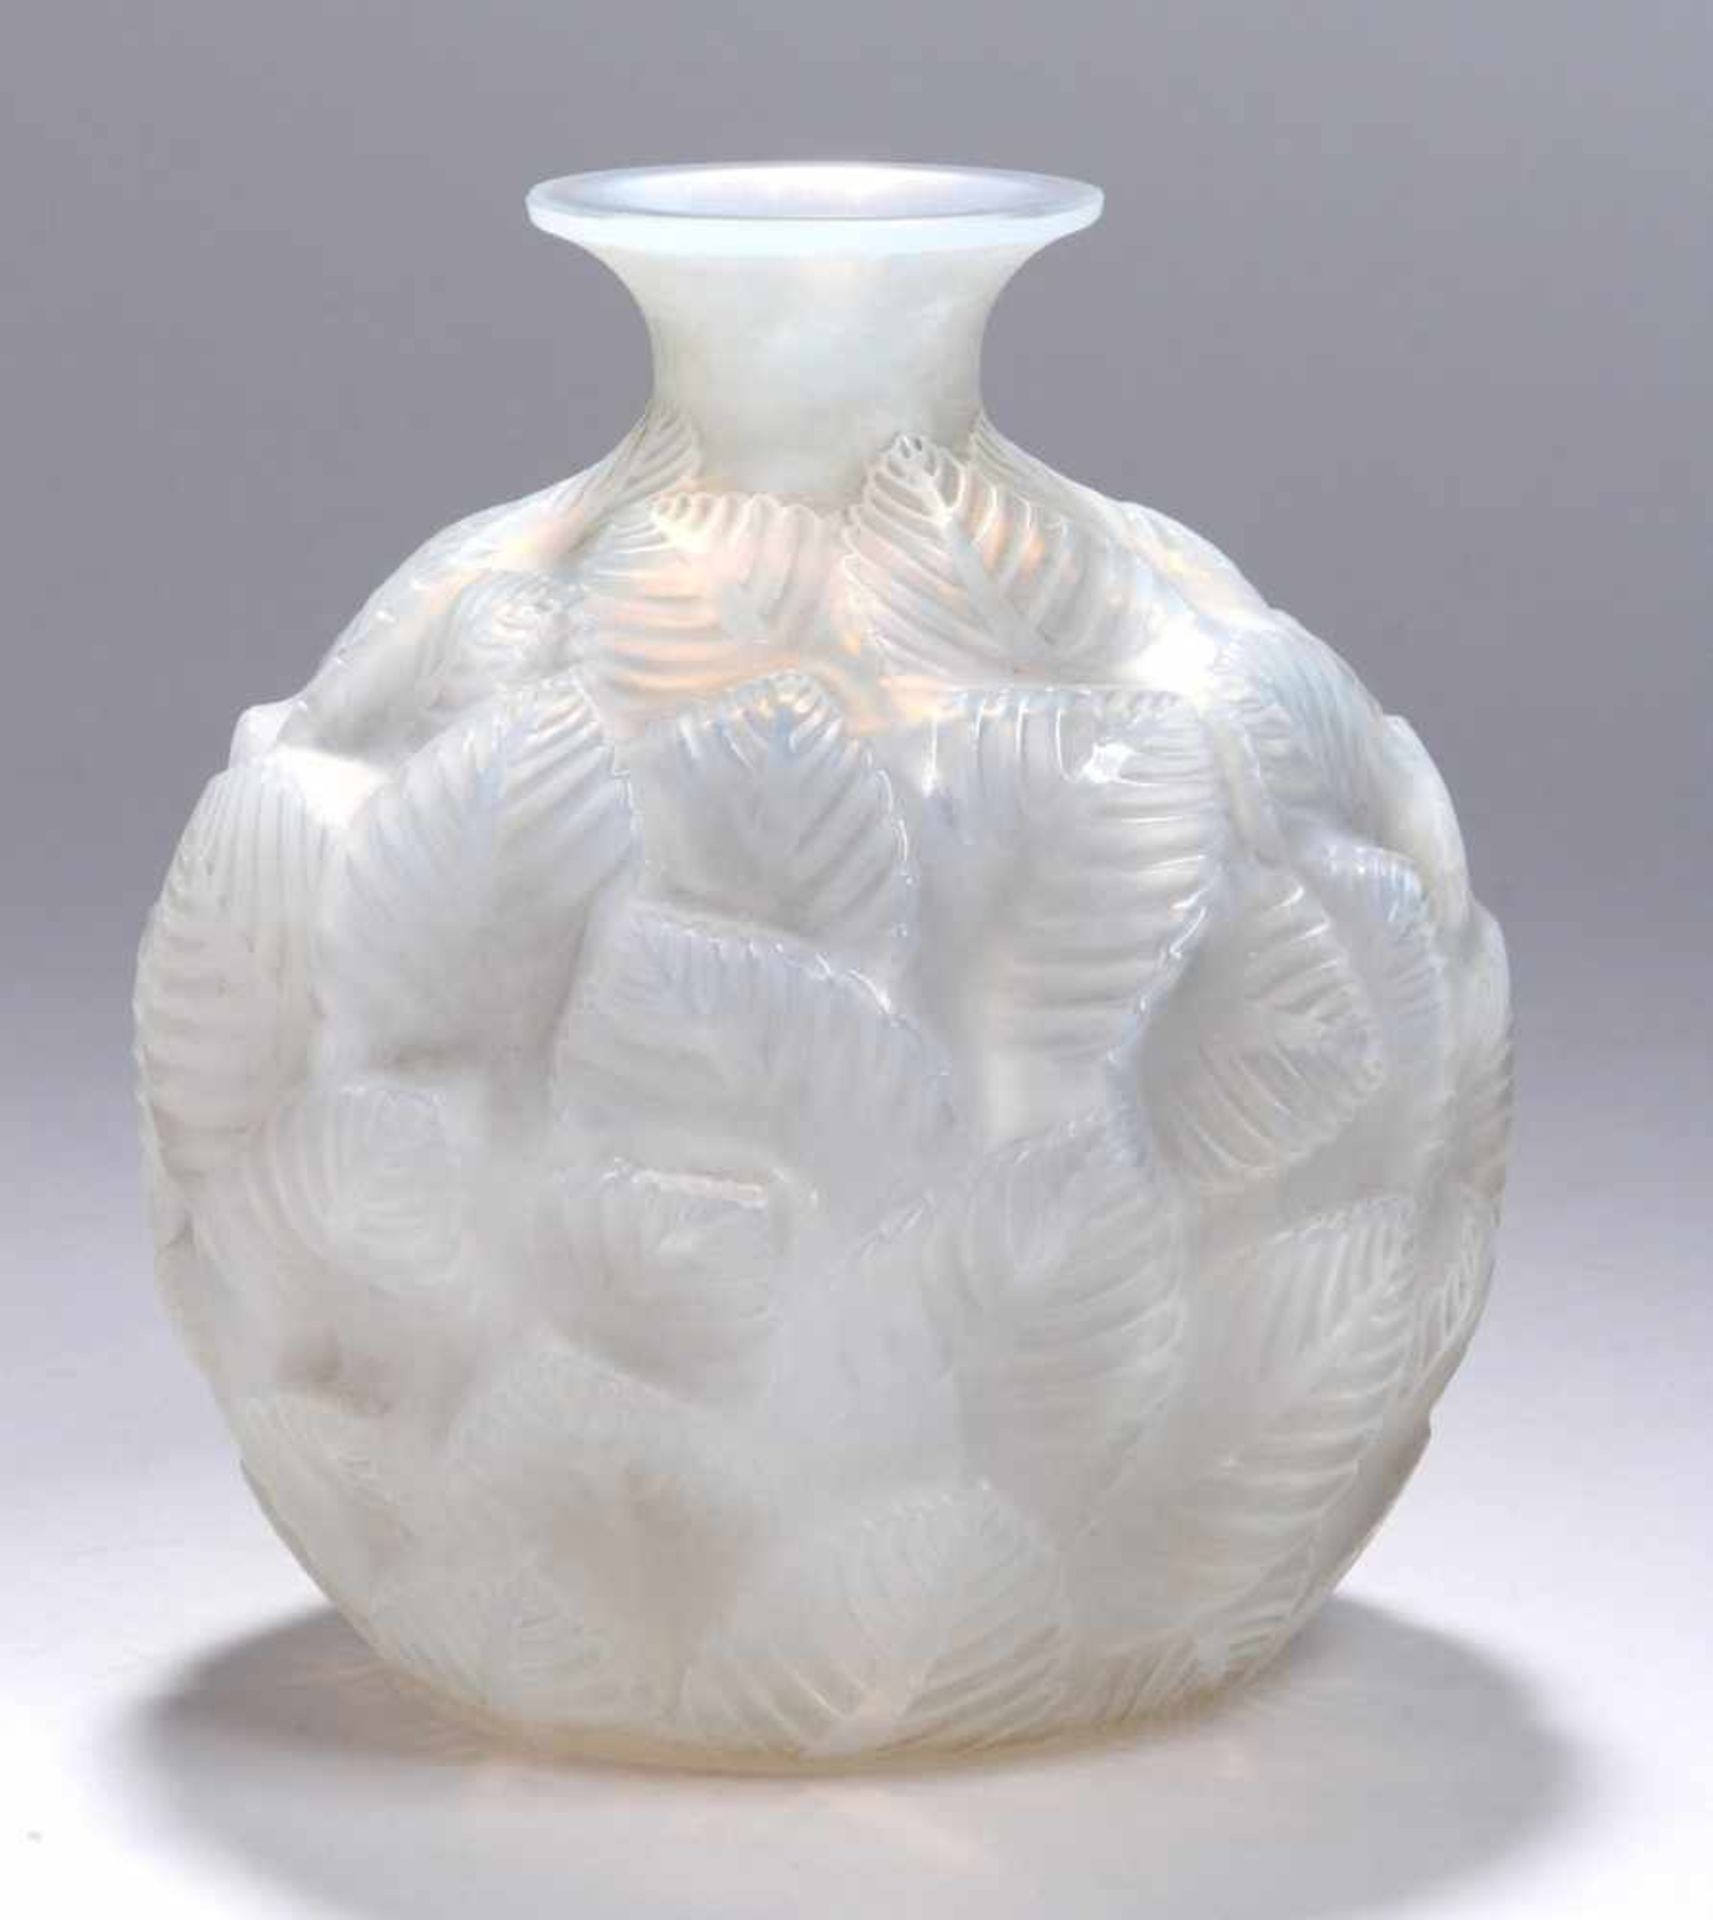 Glas-Ziervase, "Ormeaux/Feuillage", René Lalique, Wingen-sur-Moder, um 1928-32, Entw.1926, runder